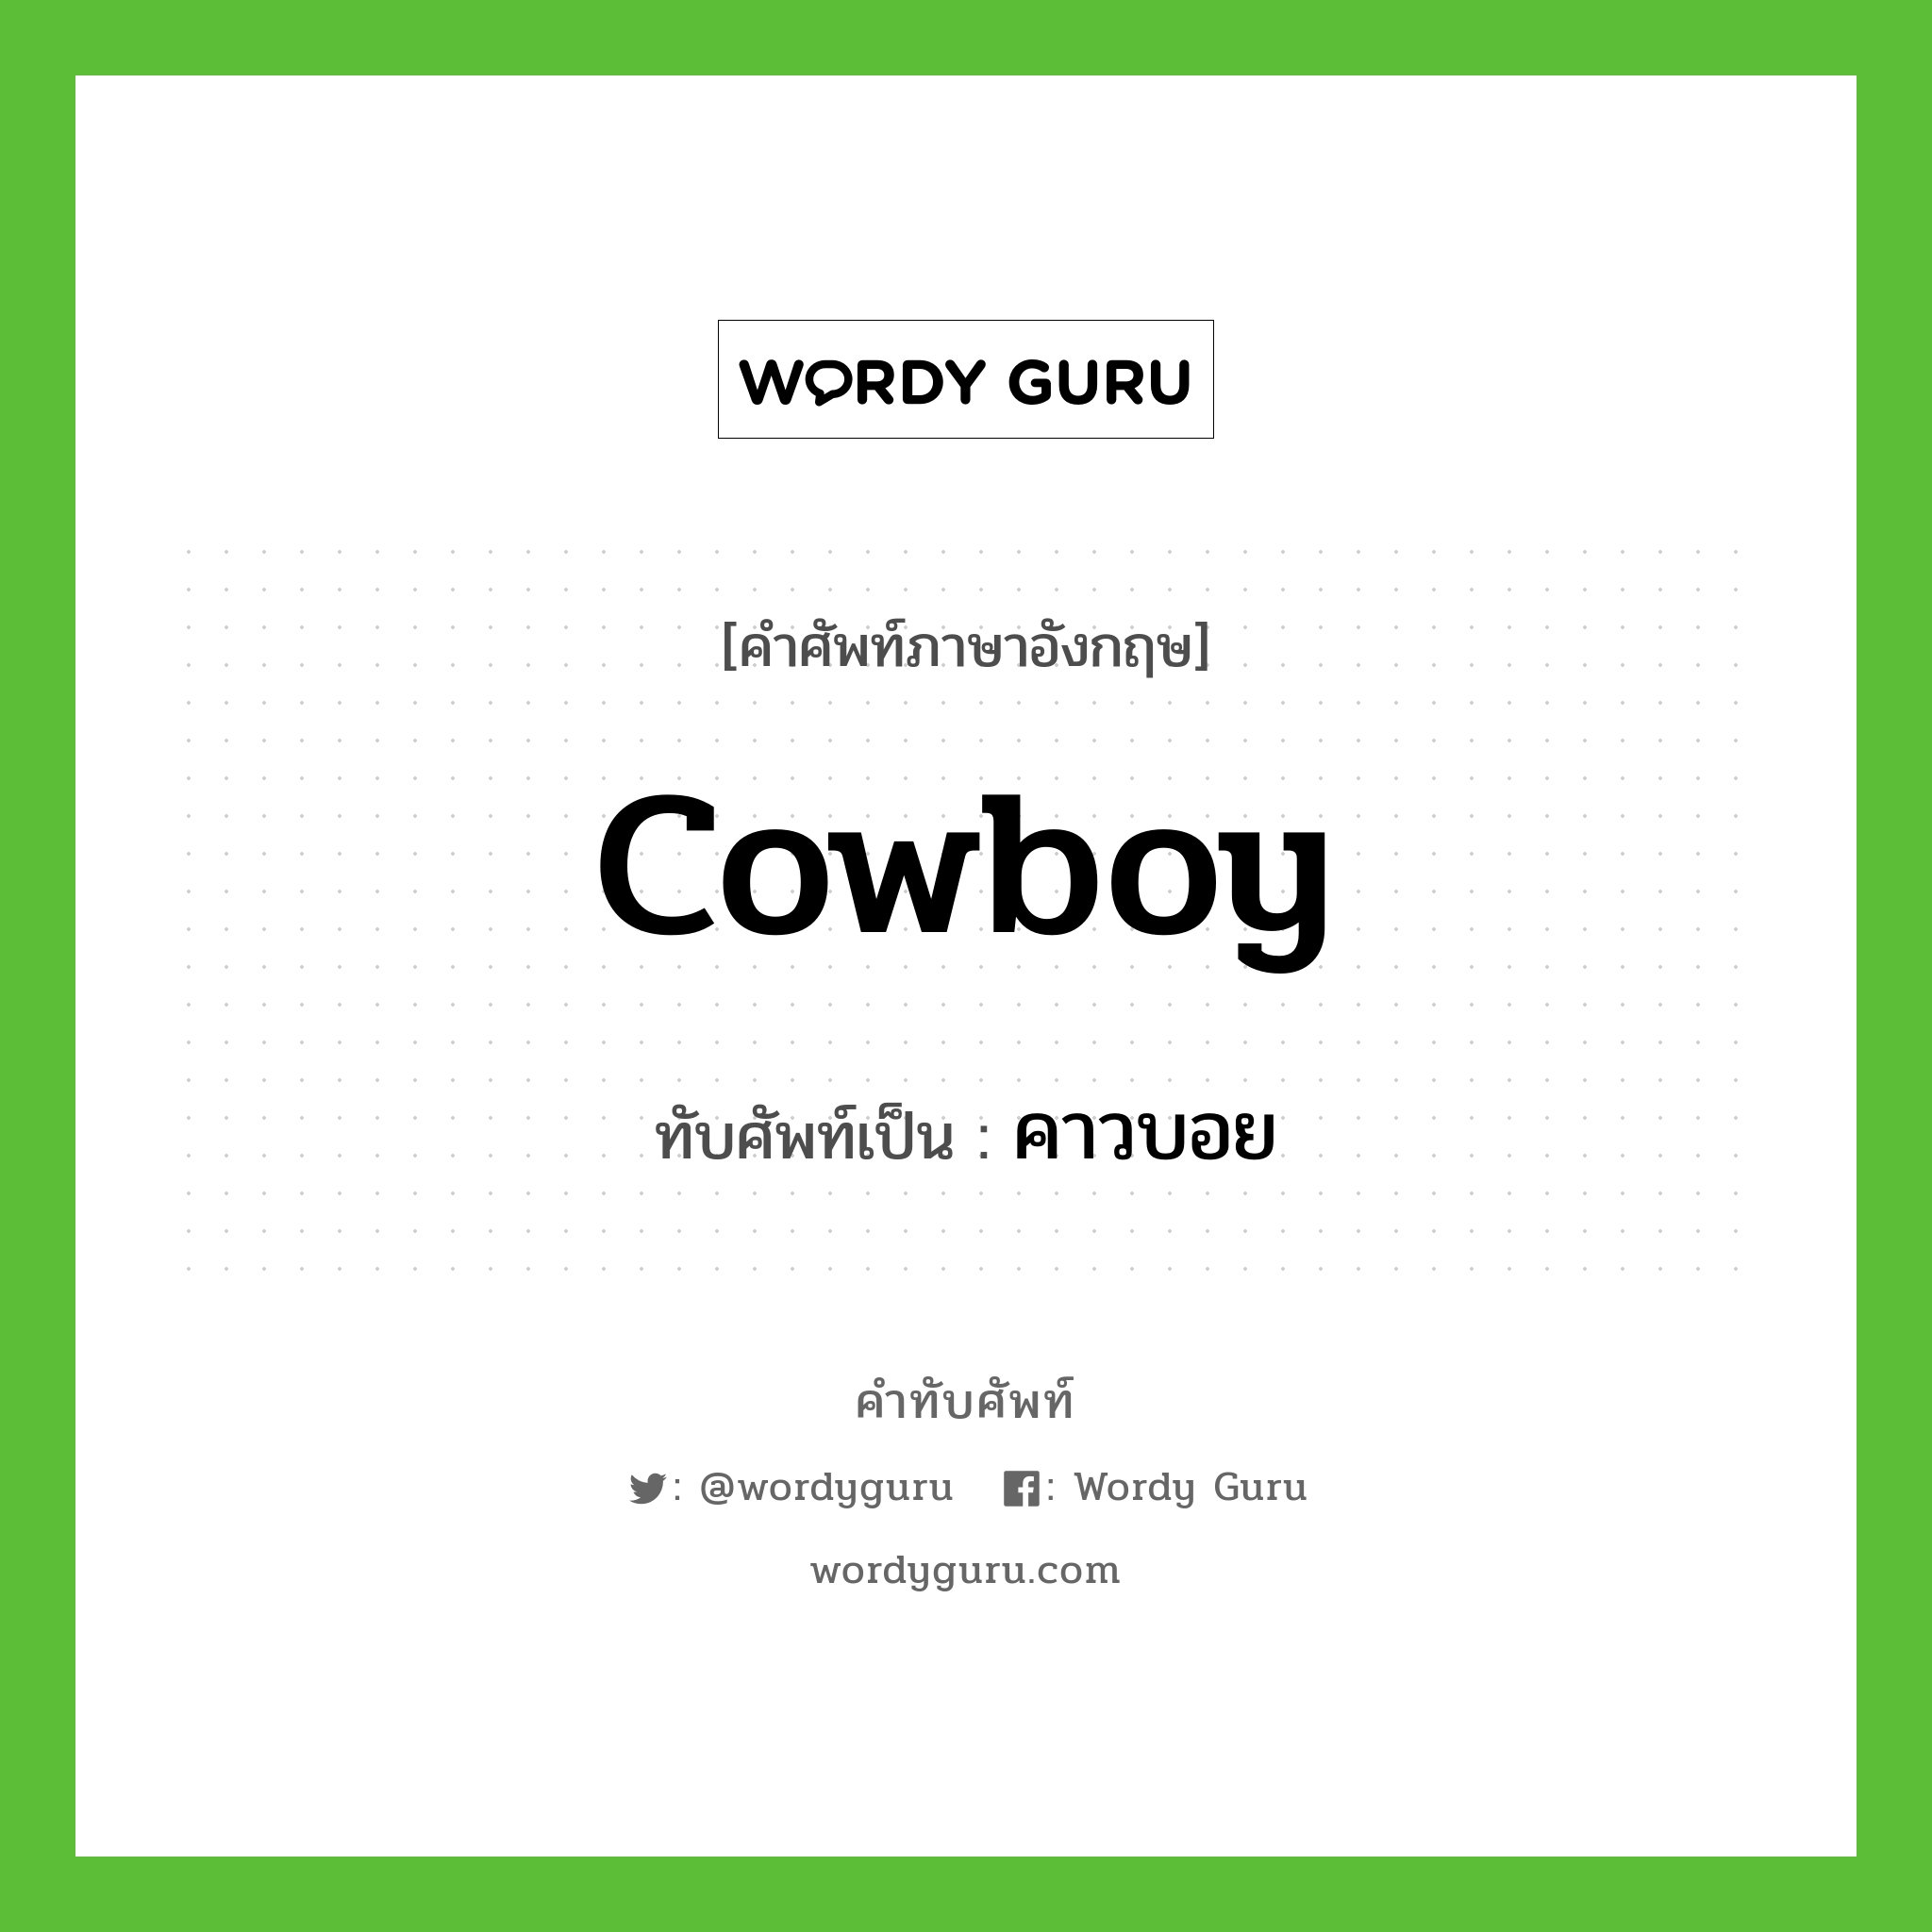 cowboy เขียนเป็นคำไทยว่าอะไร?, คำศัพท์ภาษาอังกฤษ cowboy ทับศัพท์เป็น คาวบอย